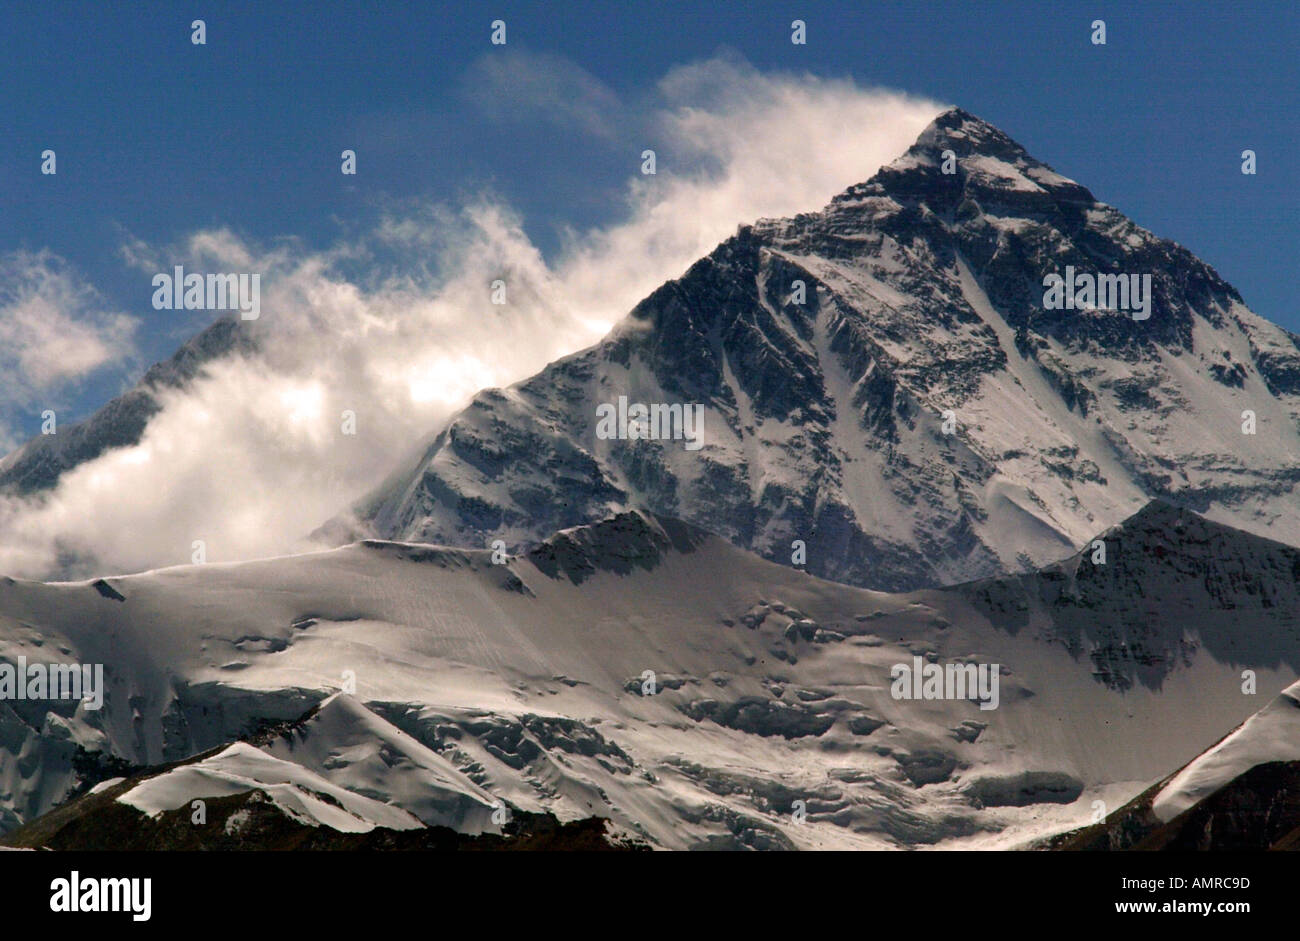 Mount Everest north face Himalayas Tibet Stock Photo - Alamy